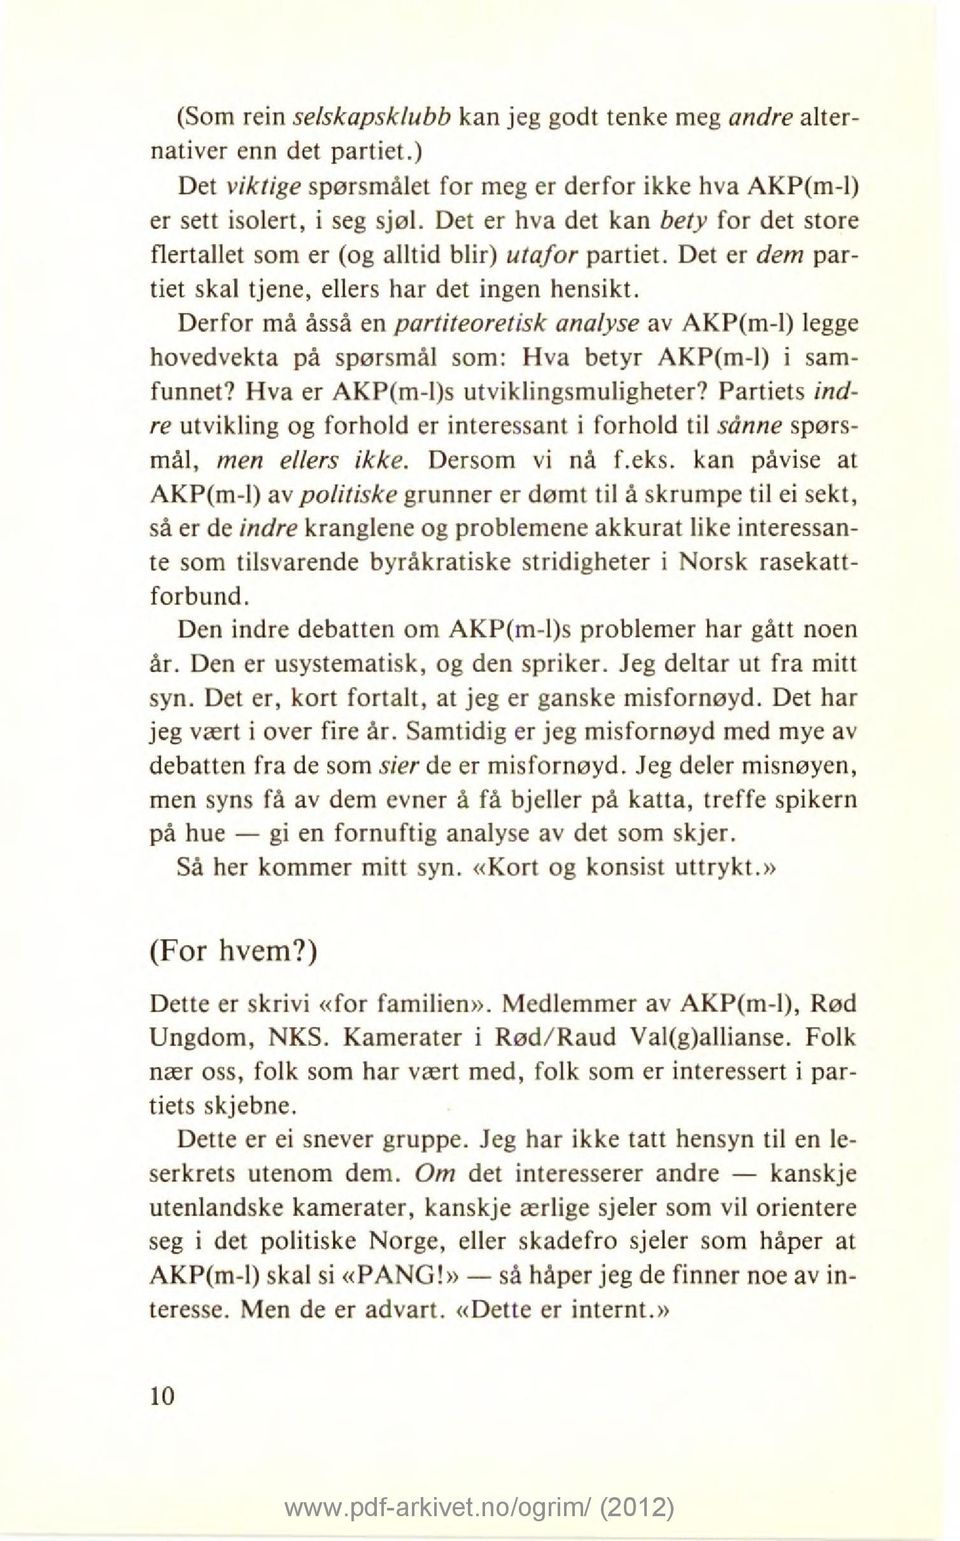 Derfor må åsså en partiteoretisk analyse av AKP(m-1) legge hovedvekta på spørsmål som: Hva betyr AKP(m-1) i samfunnet? Hva er AKP(m-l)s utviklingsmuligheter?